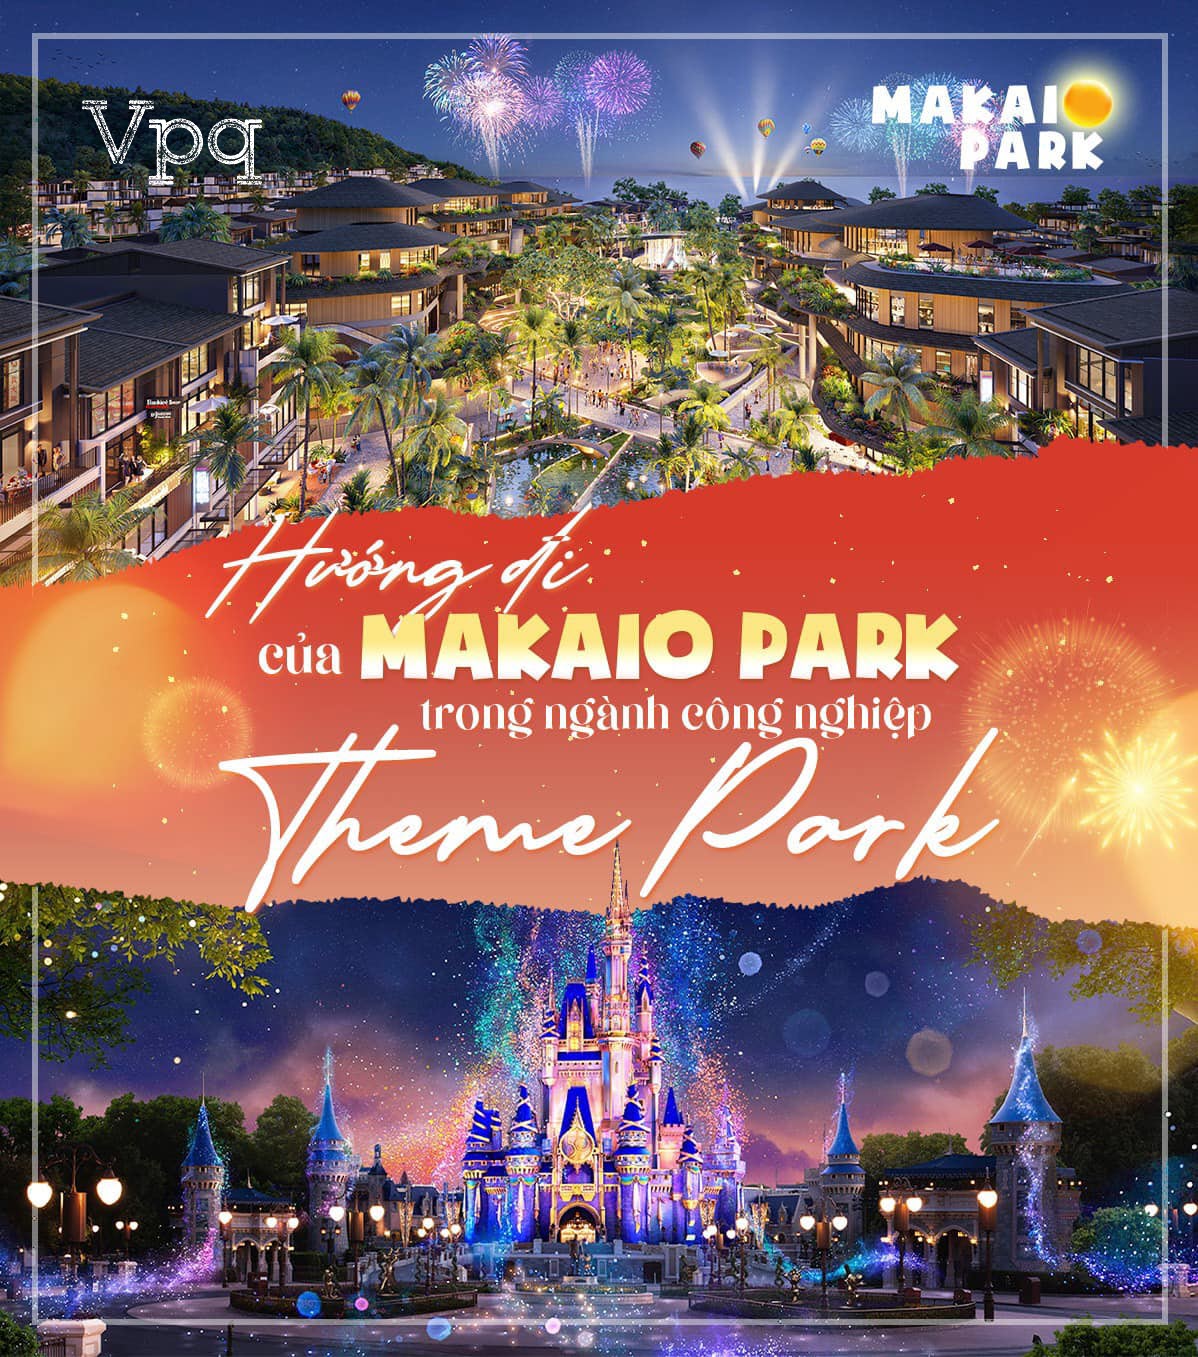 Hướng đi của Makaio Park trong ngành công nghiệp Thêm Park đầy tiềm năng